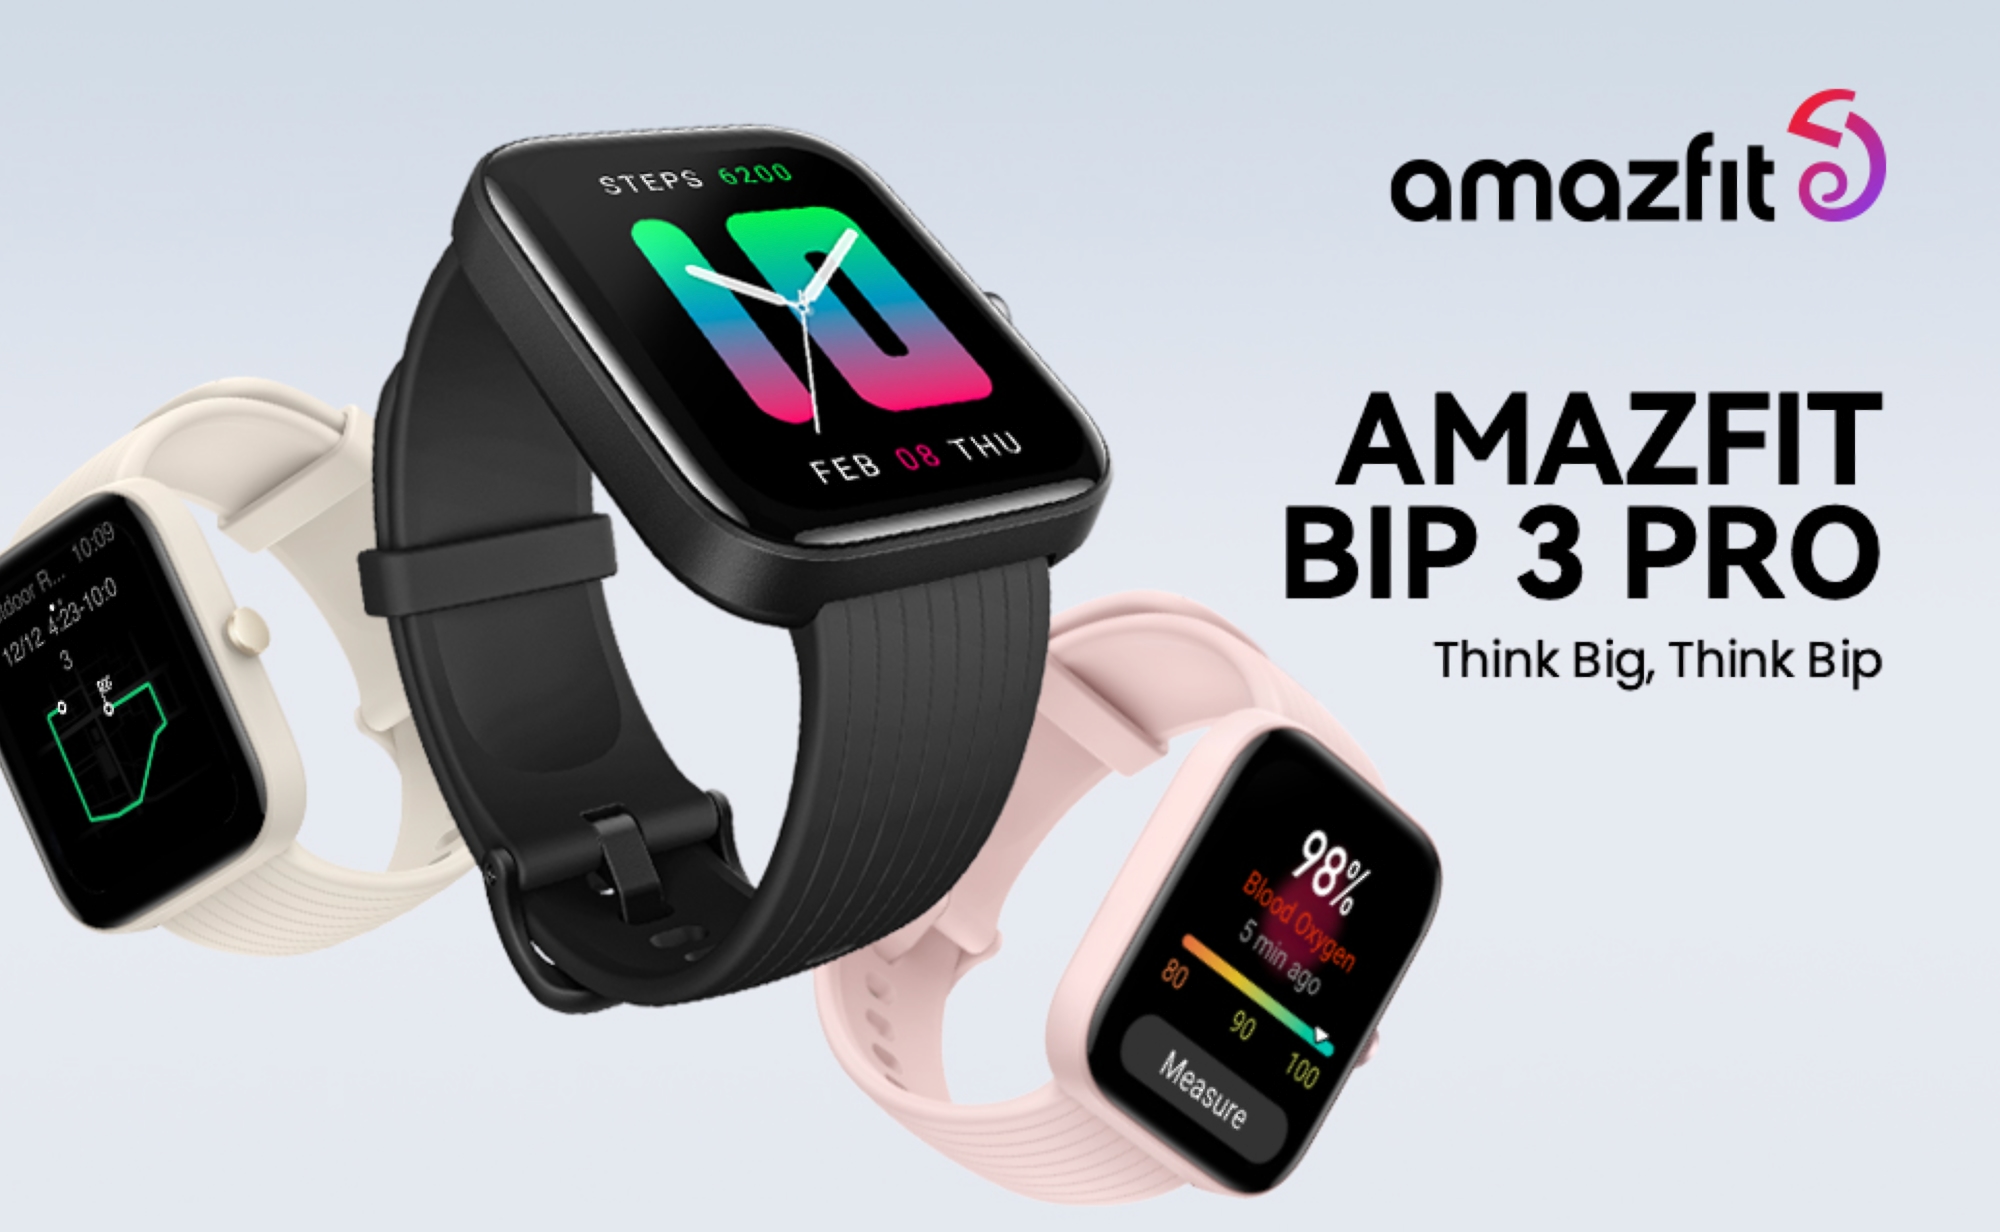 Amazfit Bip 3 Pro con quattro sistemi di navigazione, supporto Alexa e fino a 14 giorni di autonomia è in vendita su Amazon con uno sconto di 15 dollari.